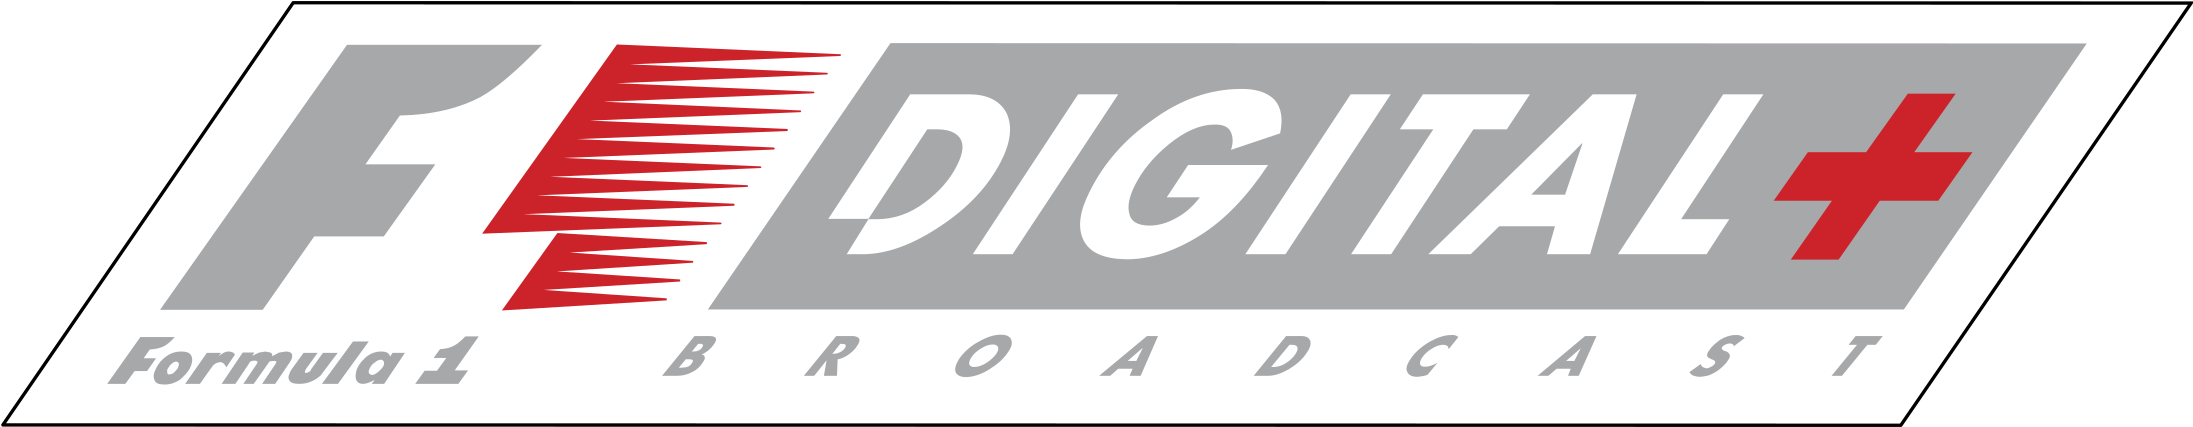 F1 Digital Logo Png Transparent - Formula 1 Clipart (2400x2400), Png Download